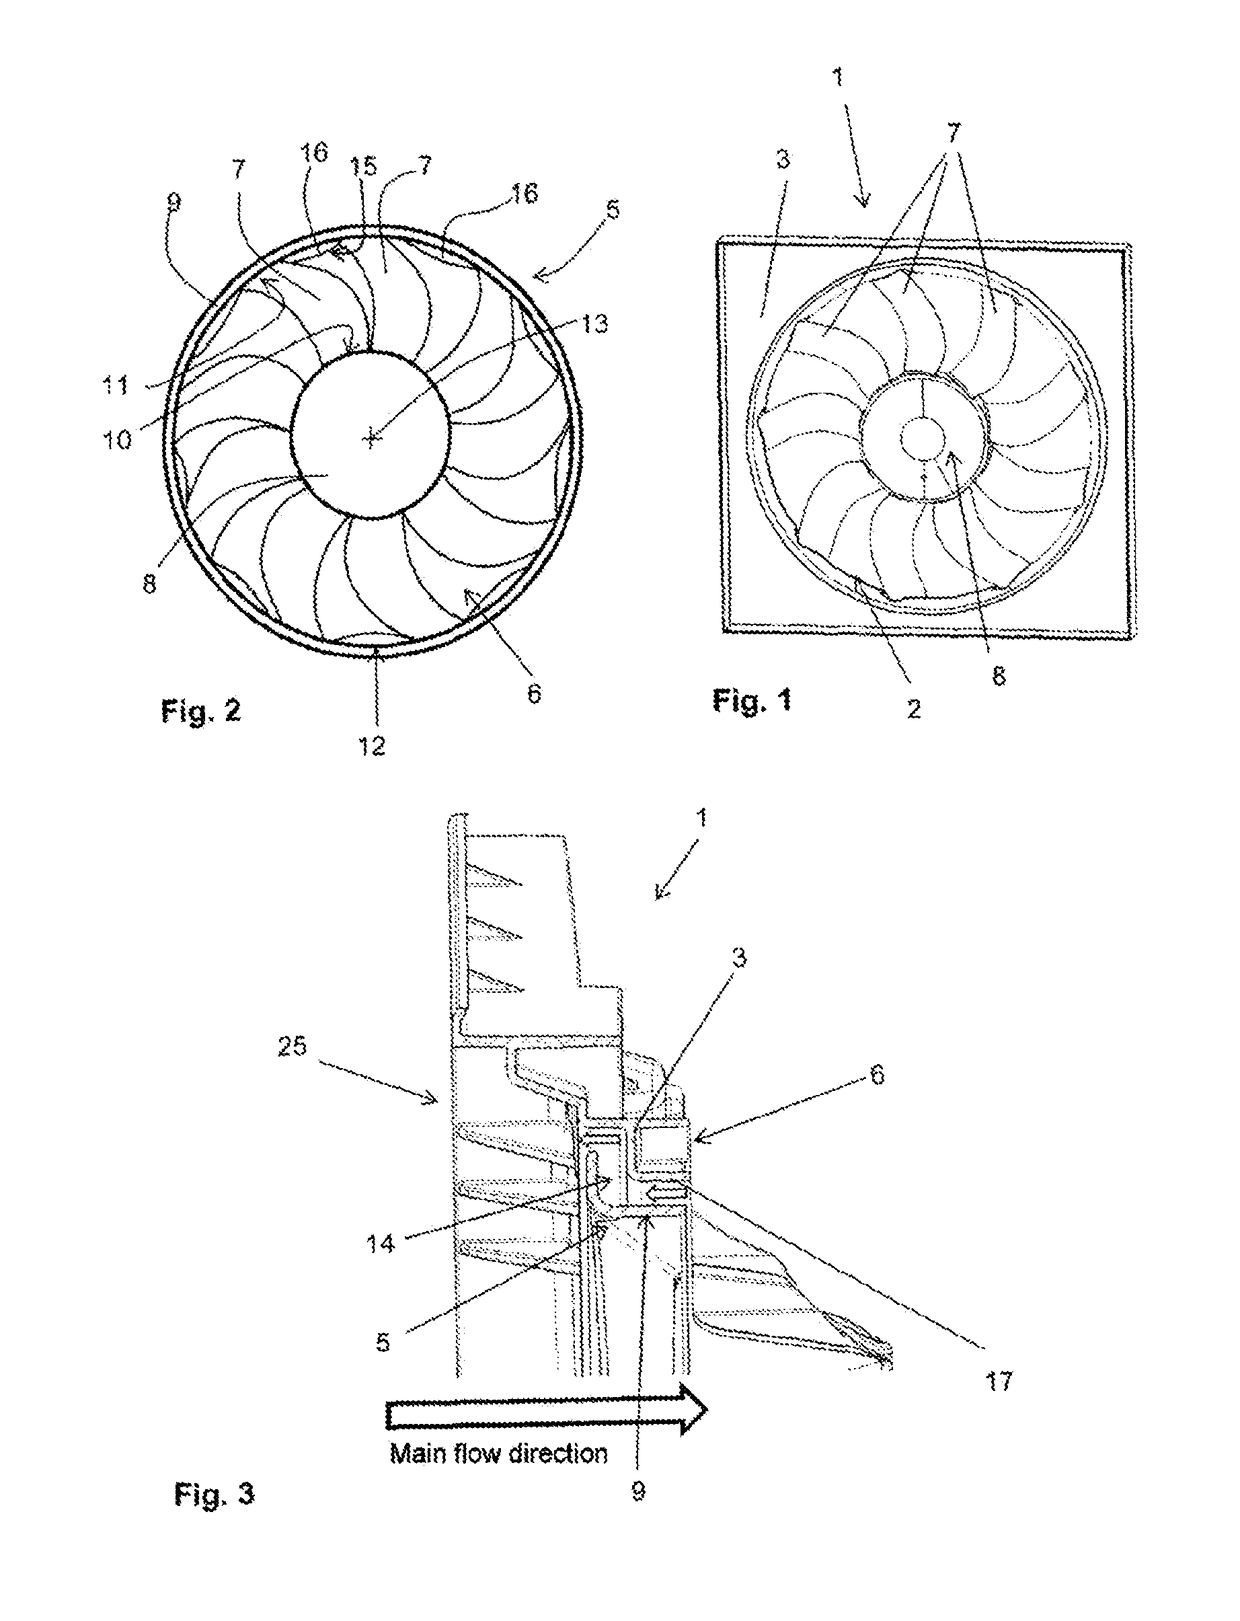 Fan impeller and radiator fan module